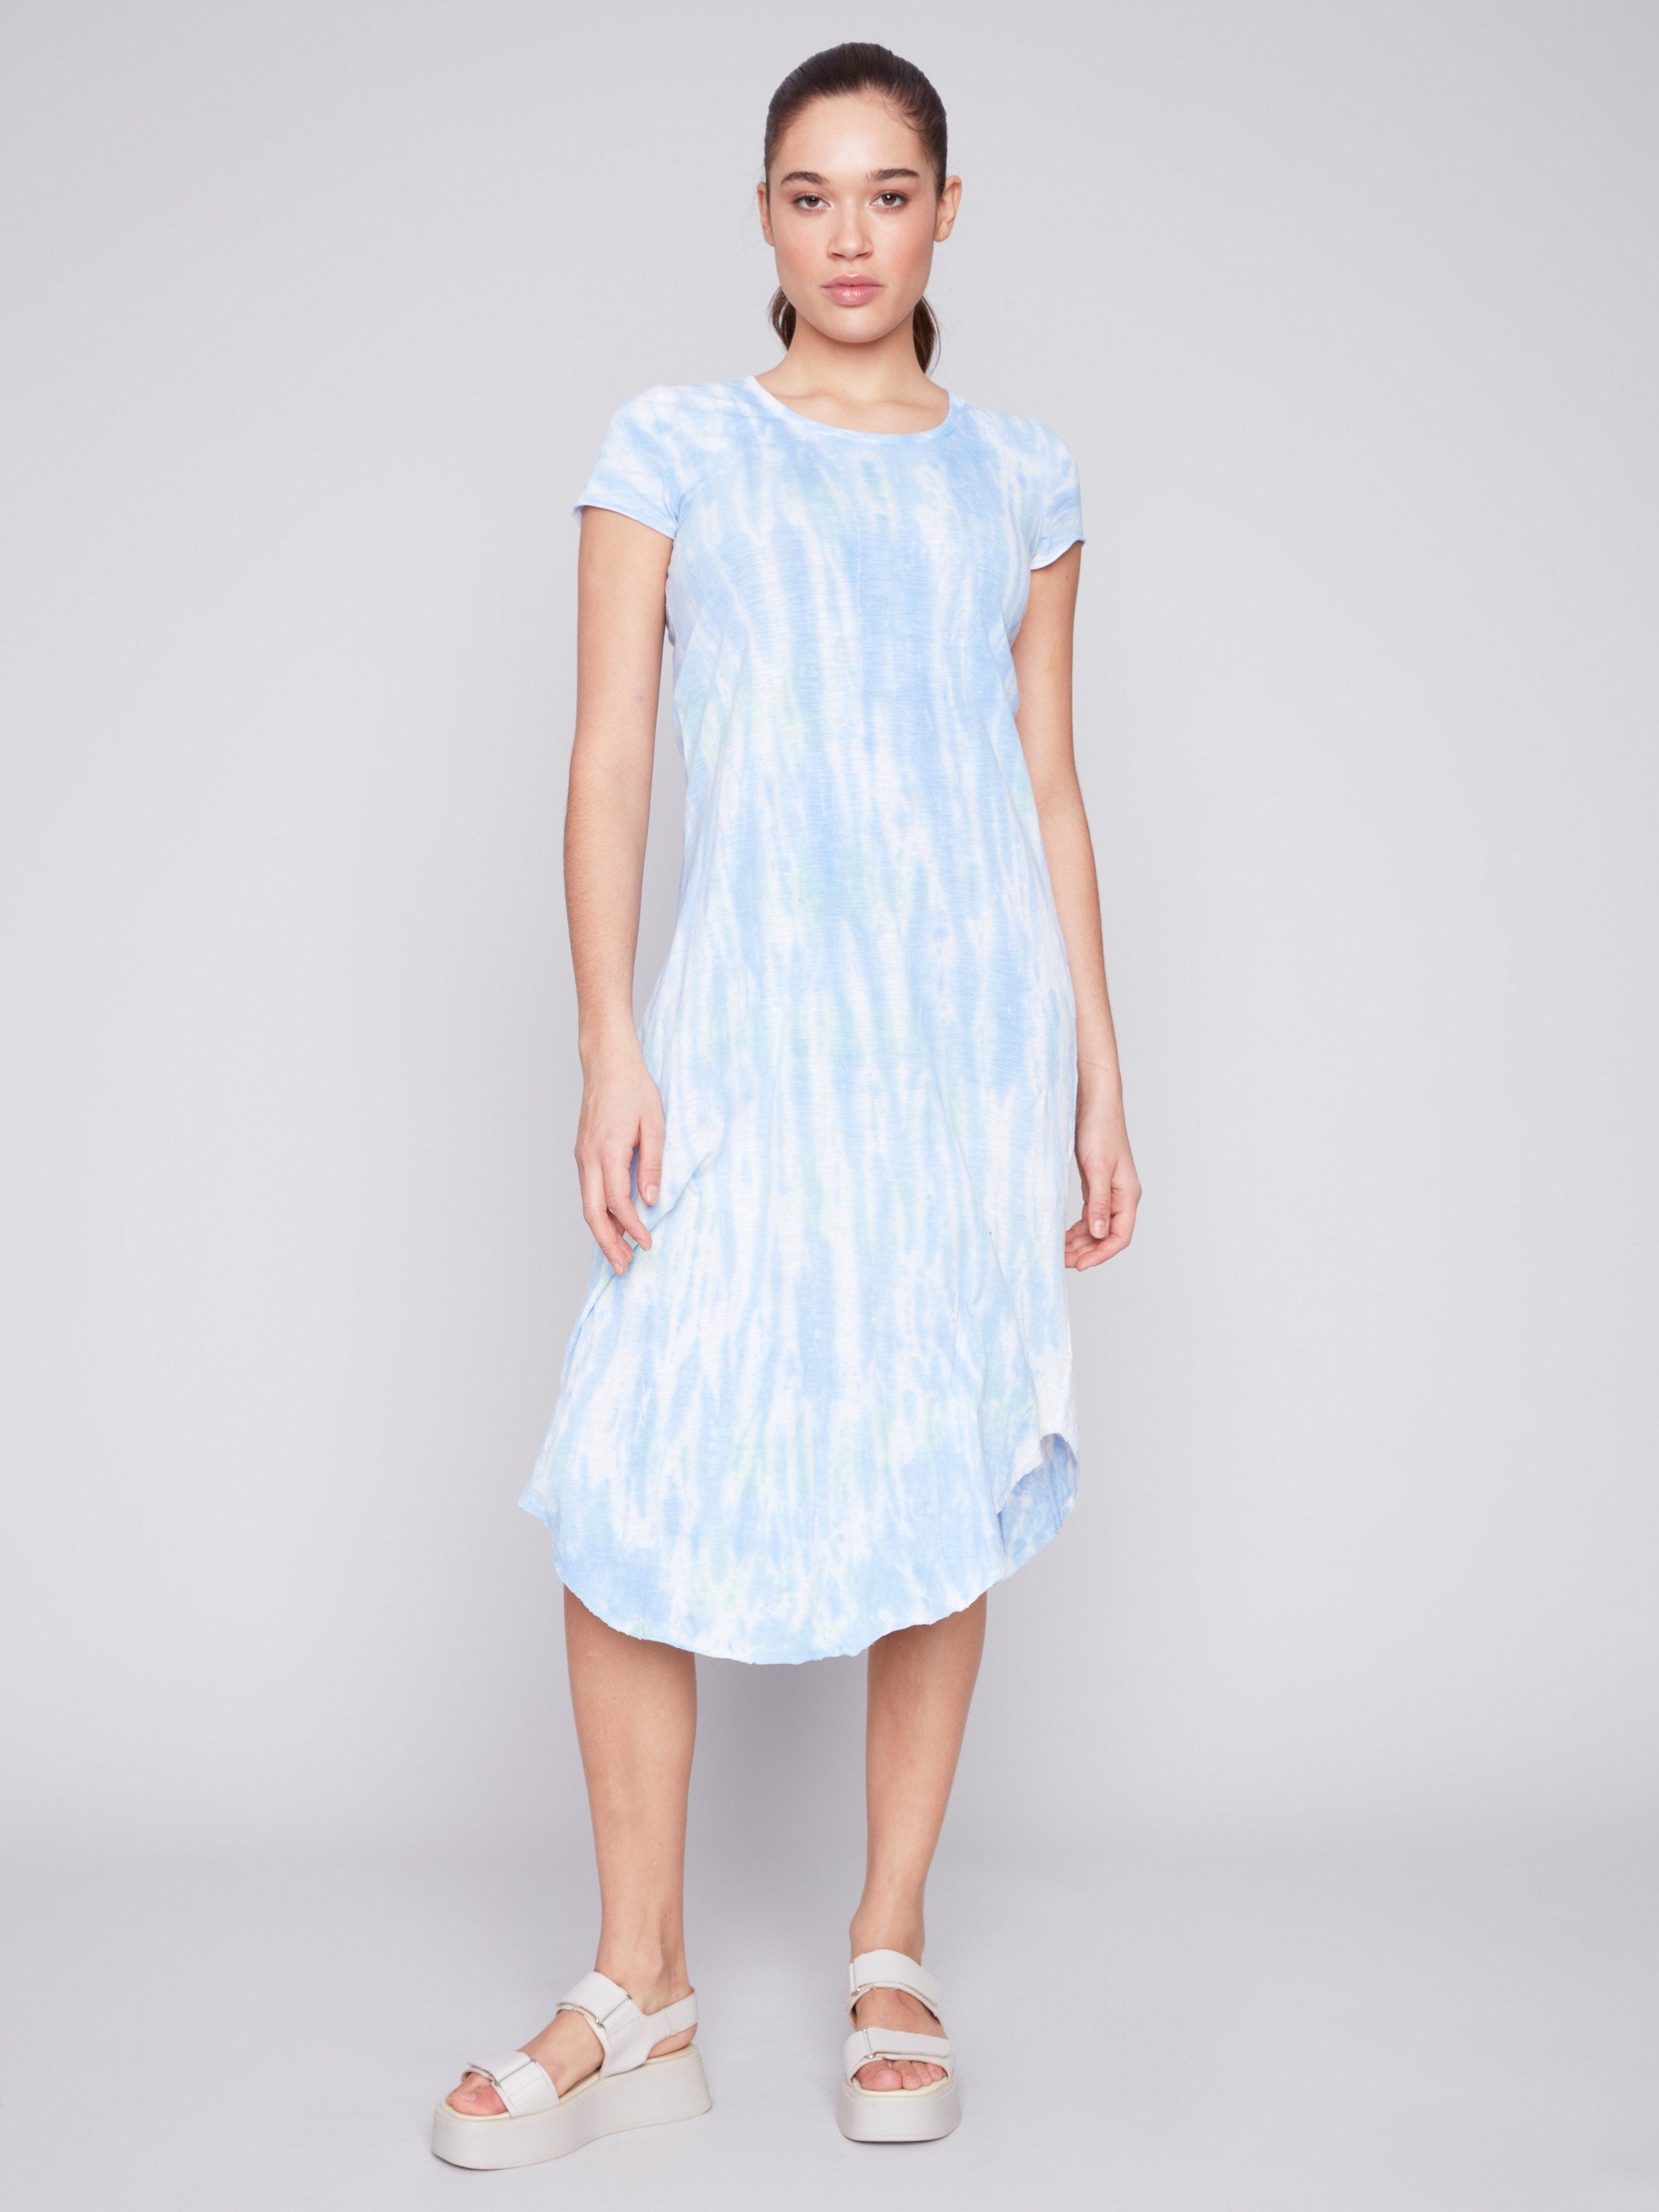 Tie Dye Cotton Slub Dress - Amazon